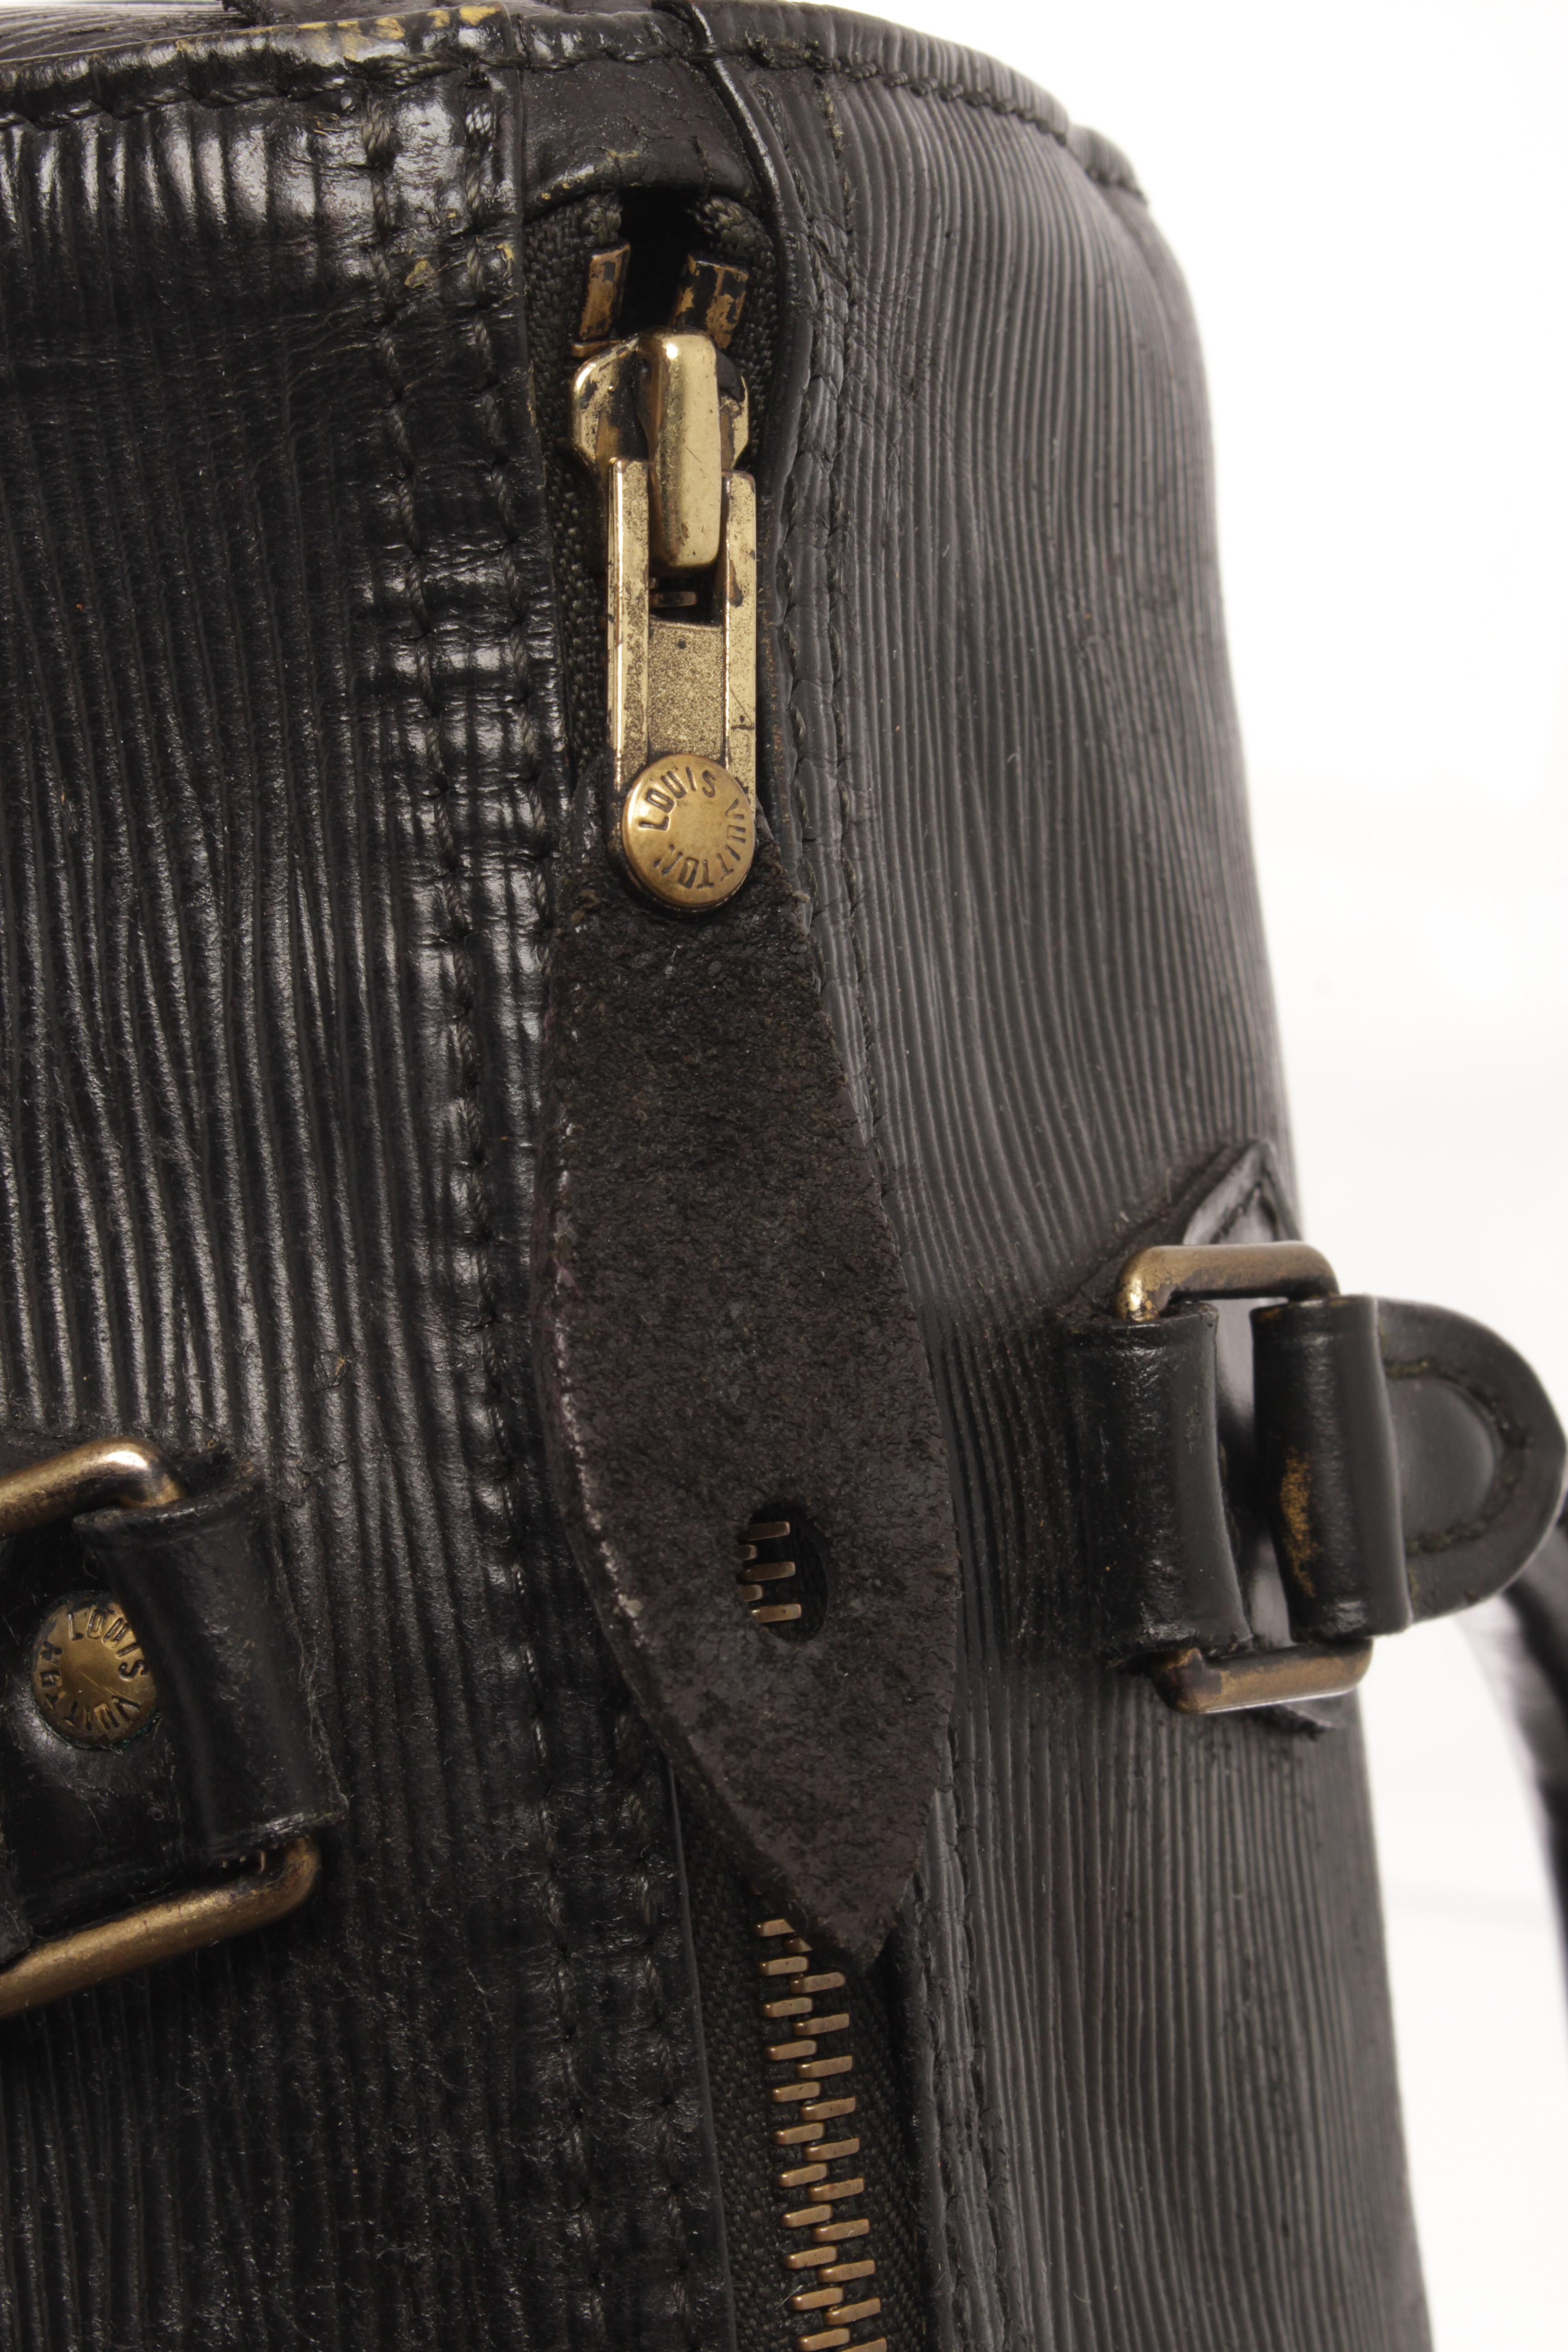 Louis Vuitton Black Epi Leather Speedy 35 Satchel Bag For Sale 3